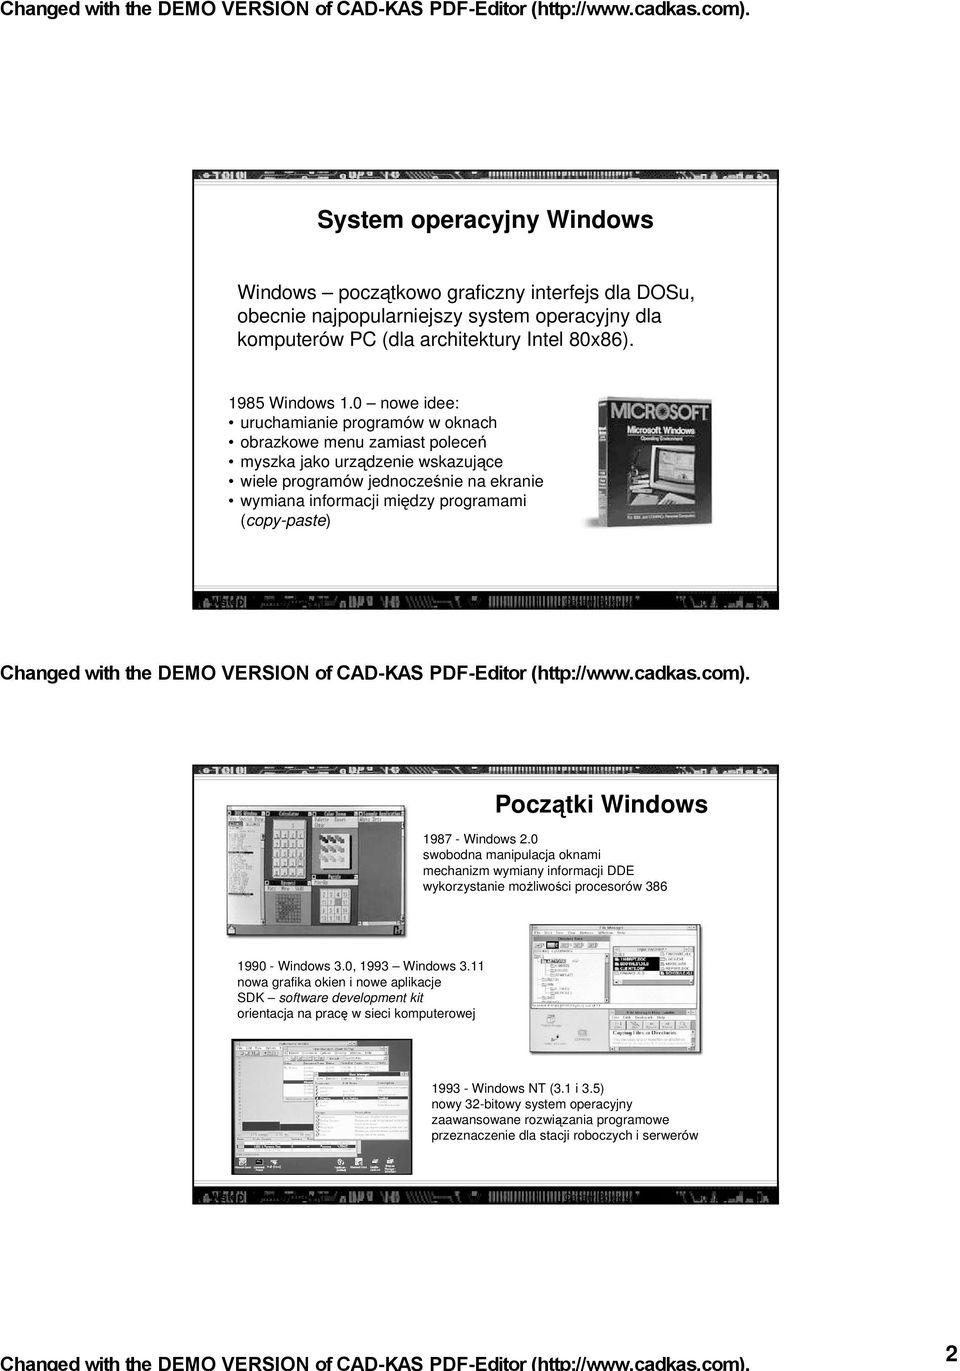 Wstęp do informatyki Cezary Bolek <cbolek@ki.uni.lodz.pl> 3 Początki Windows 1987 - Windows 2.